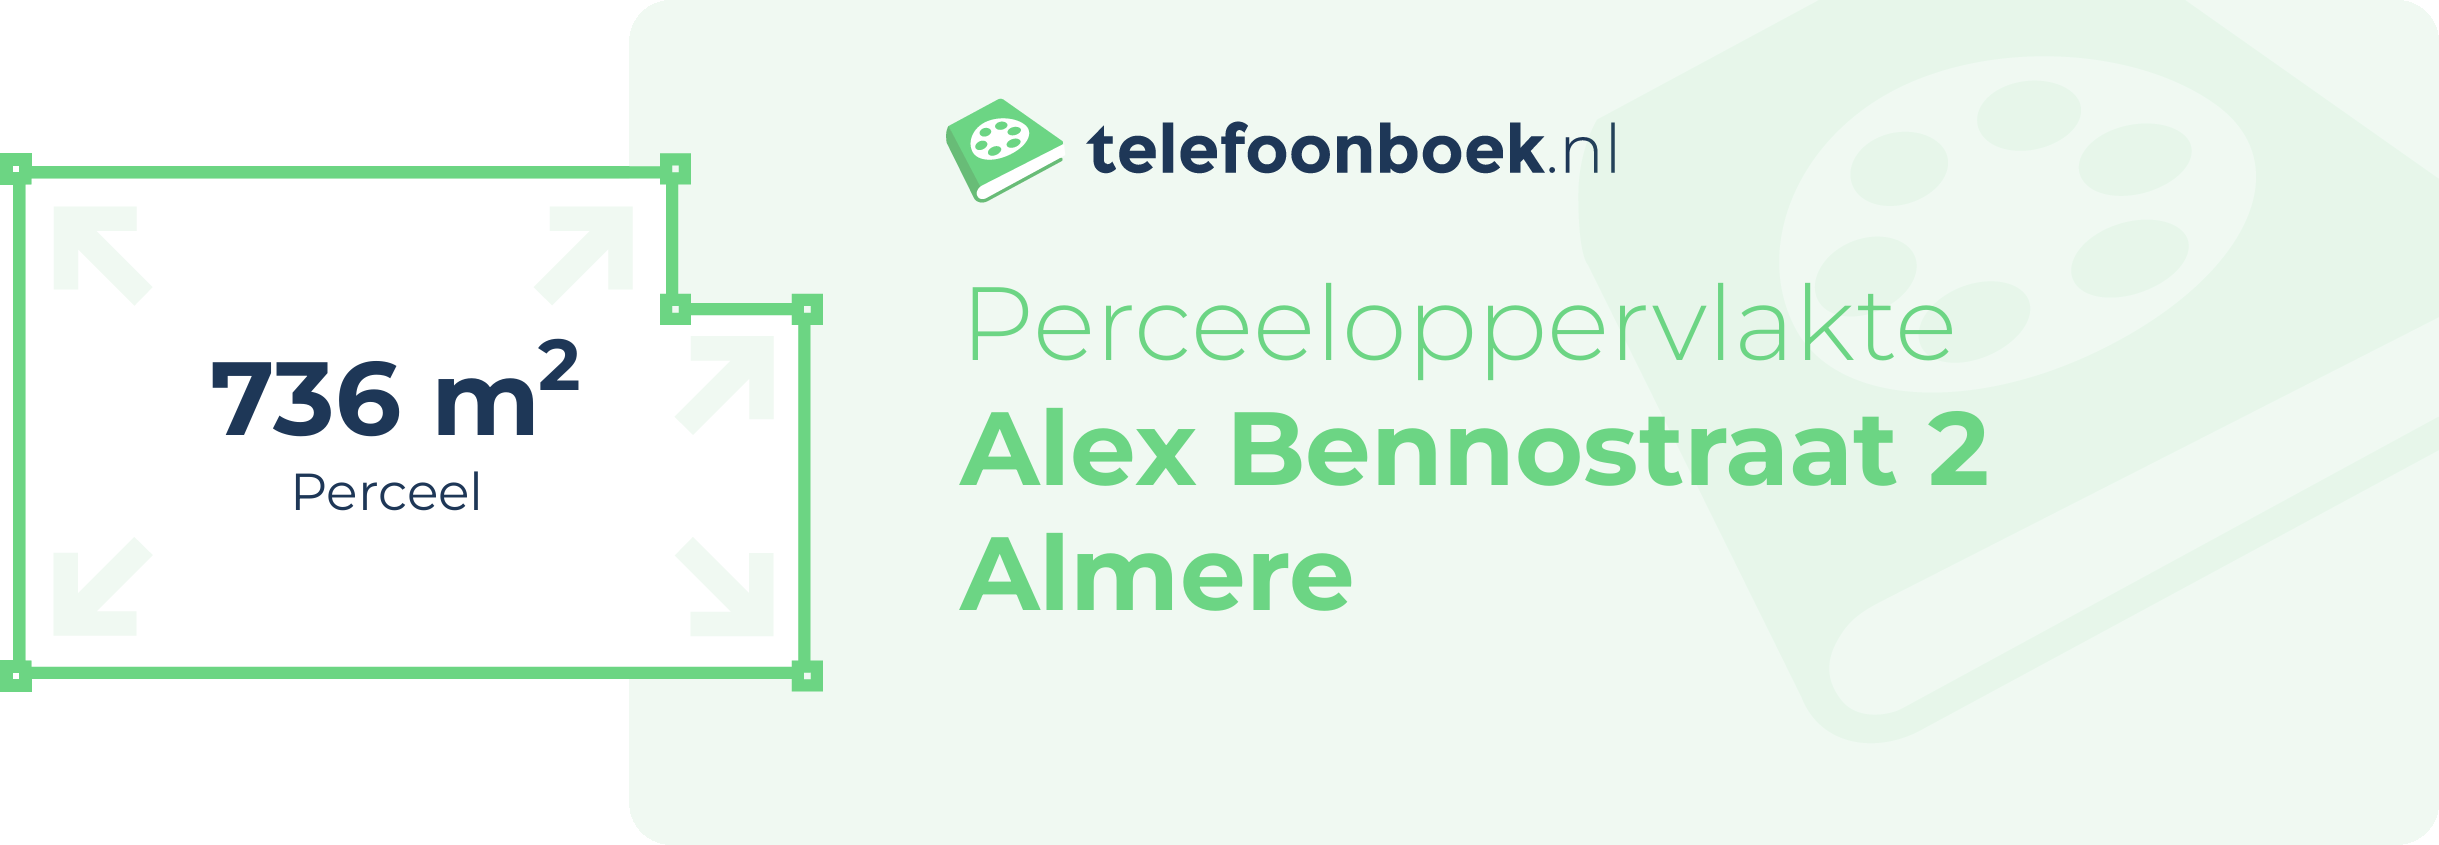 Perceeloppervlakte Alex Bennostraat 2 Almere